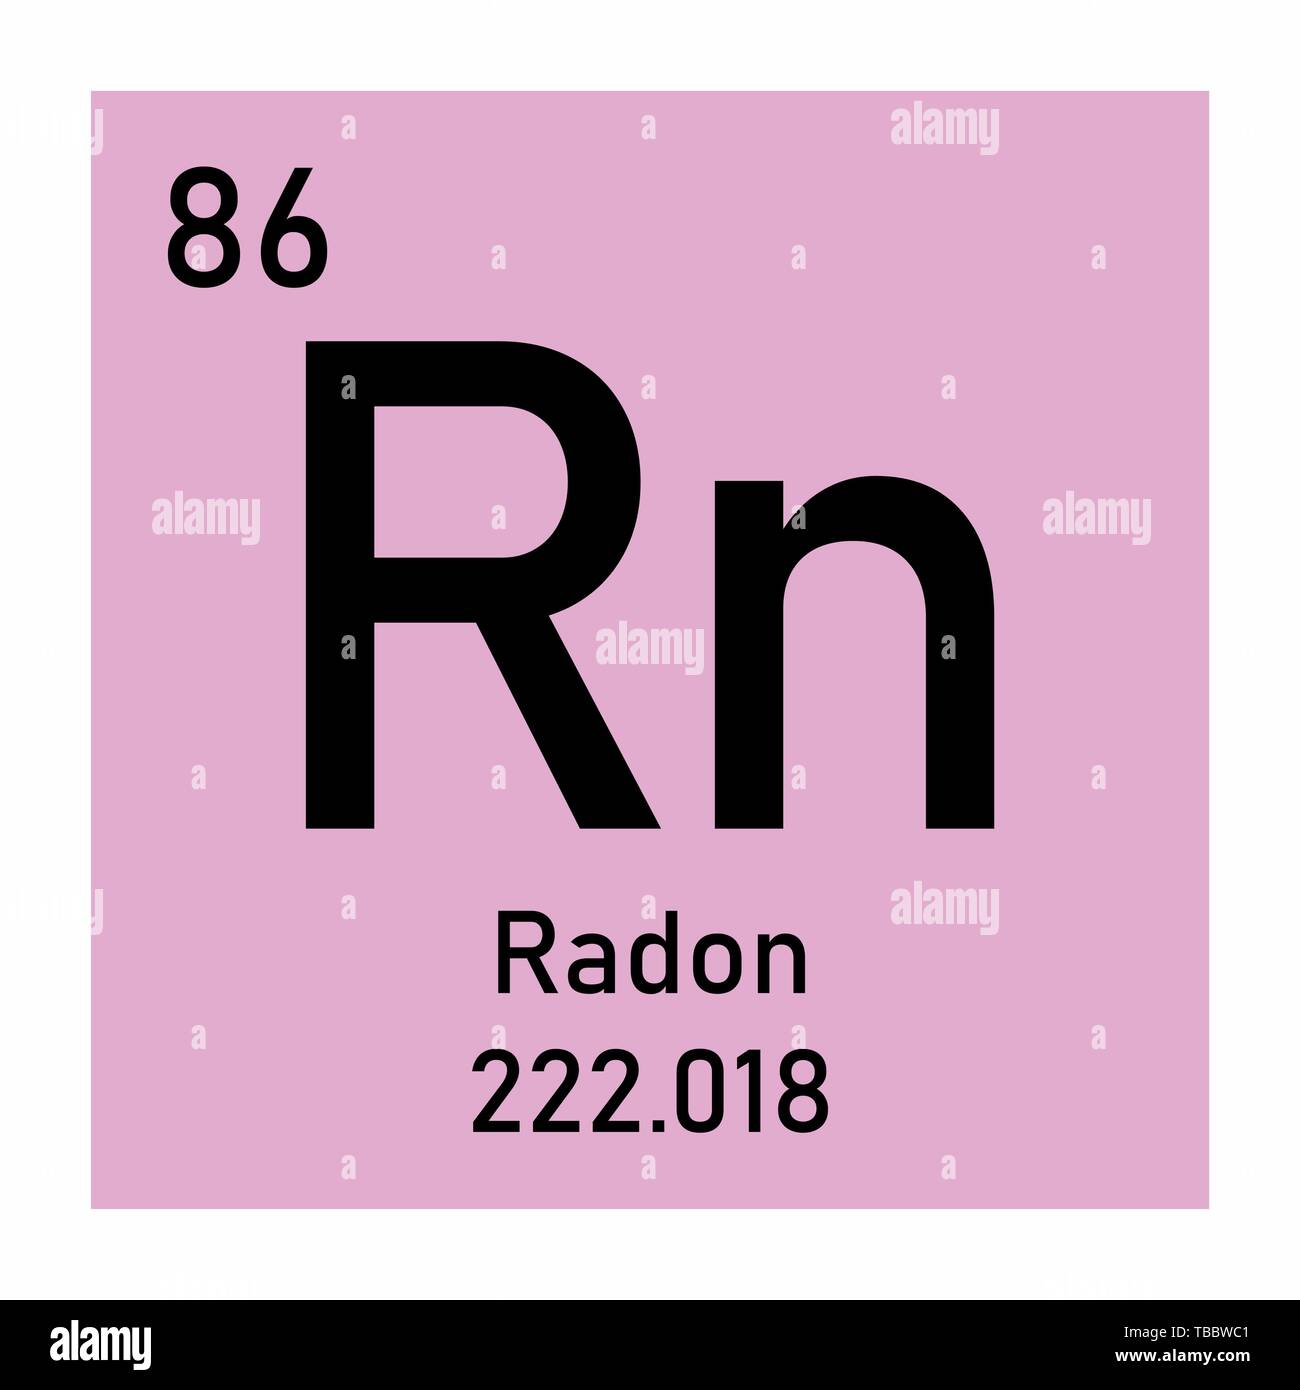 Rn какой химический элемент